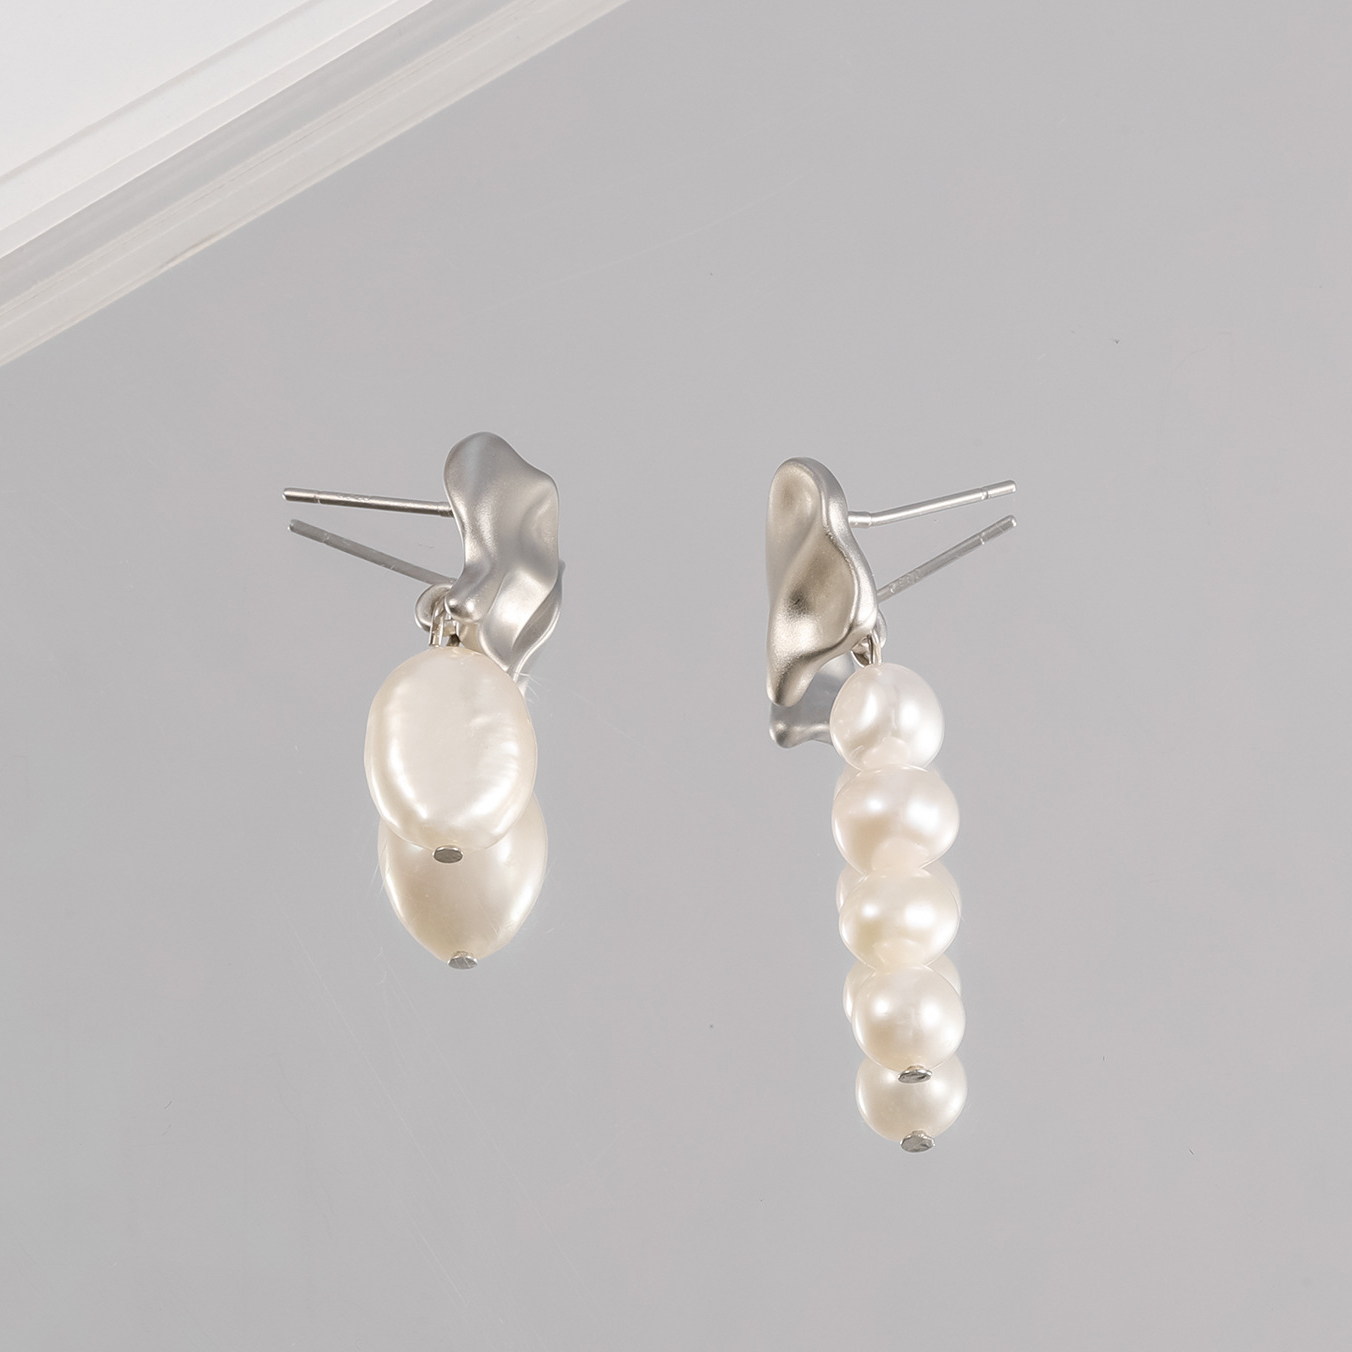 3:Silver stud earrings